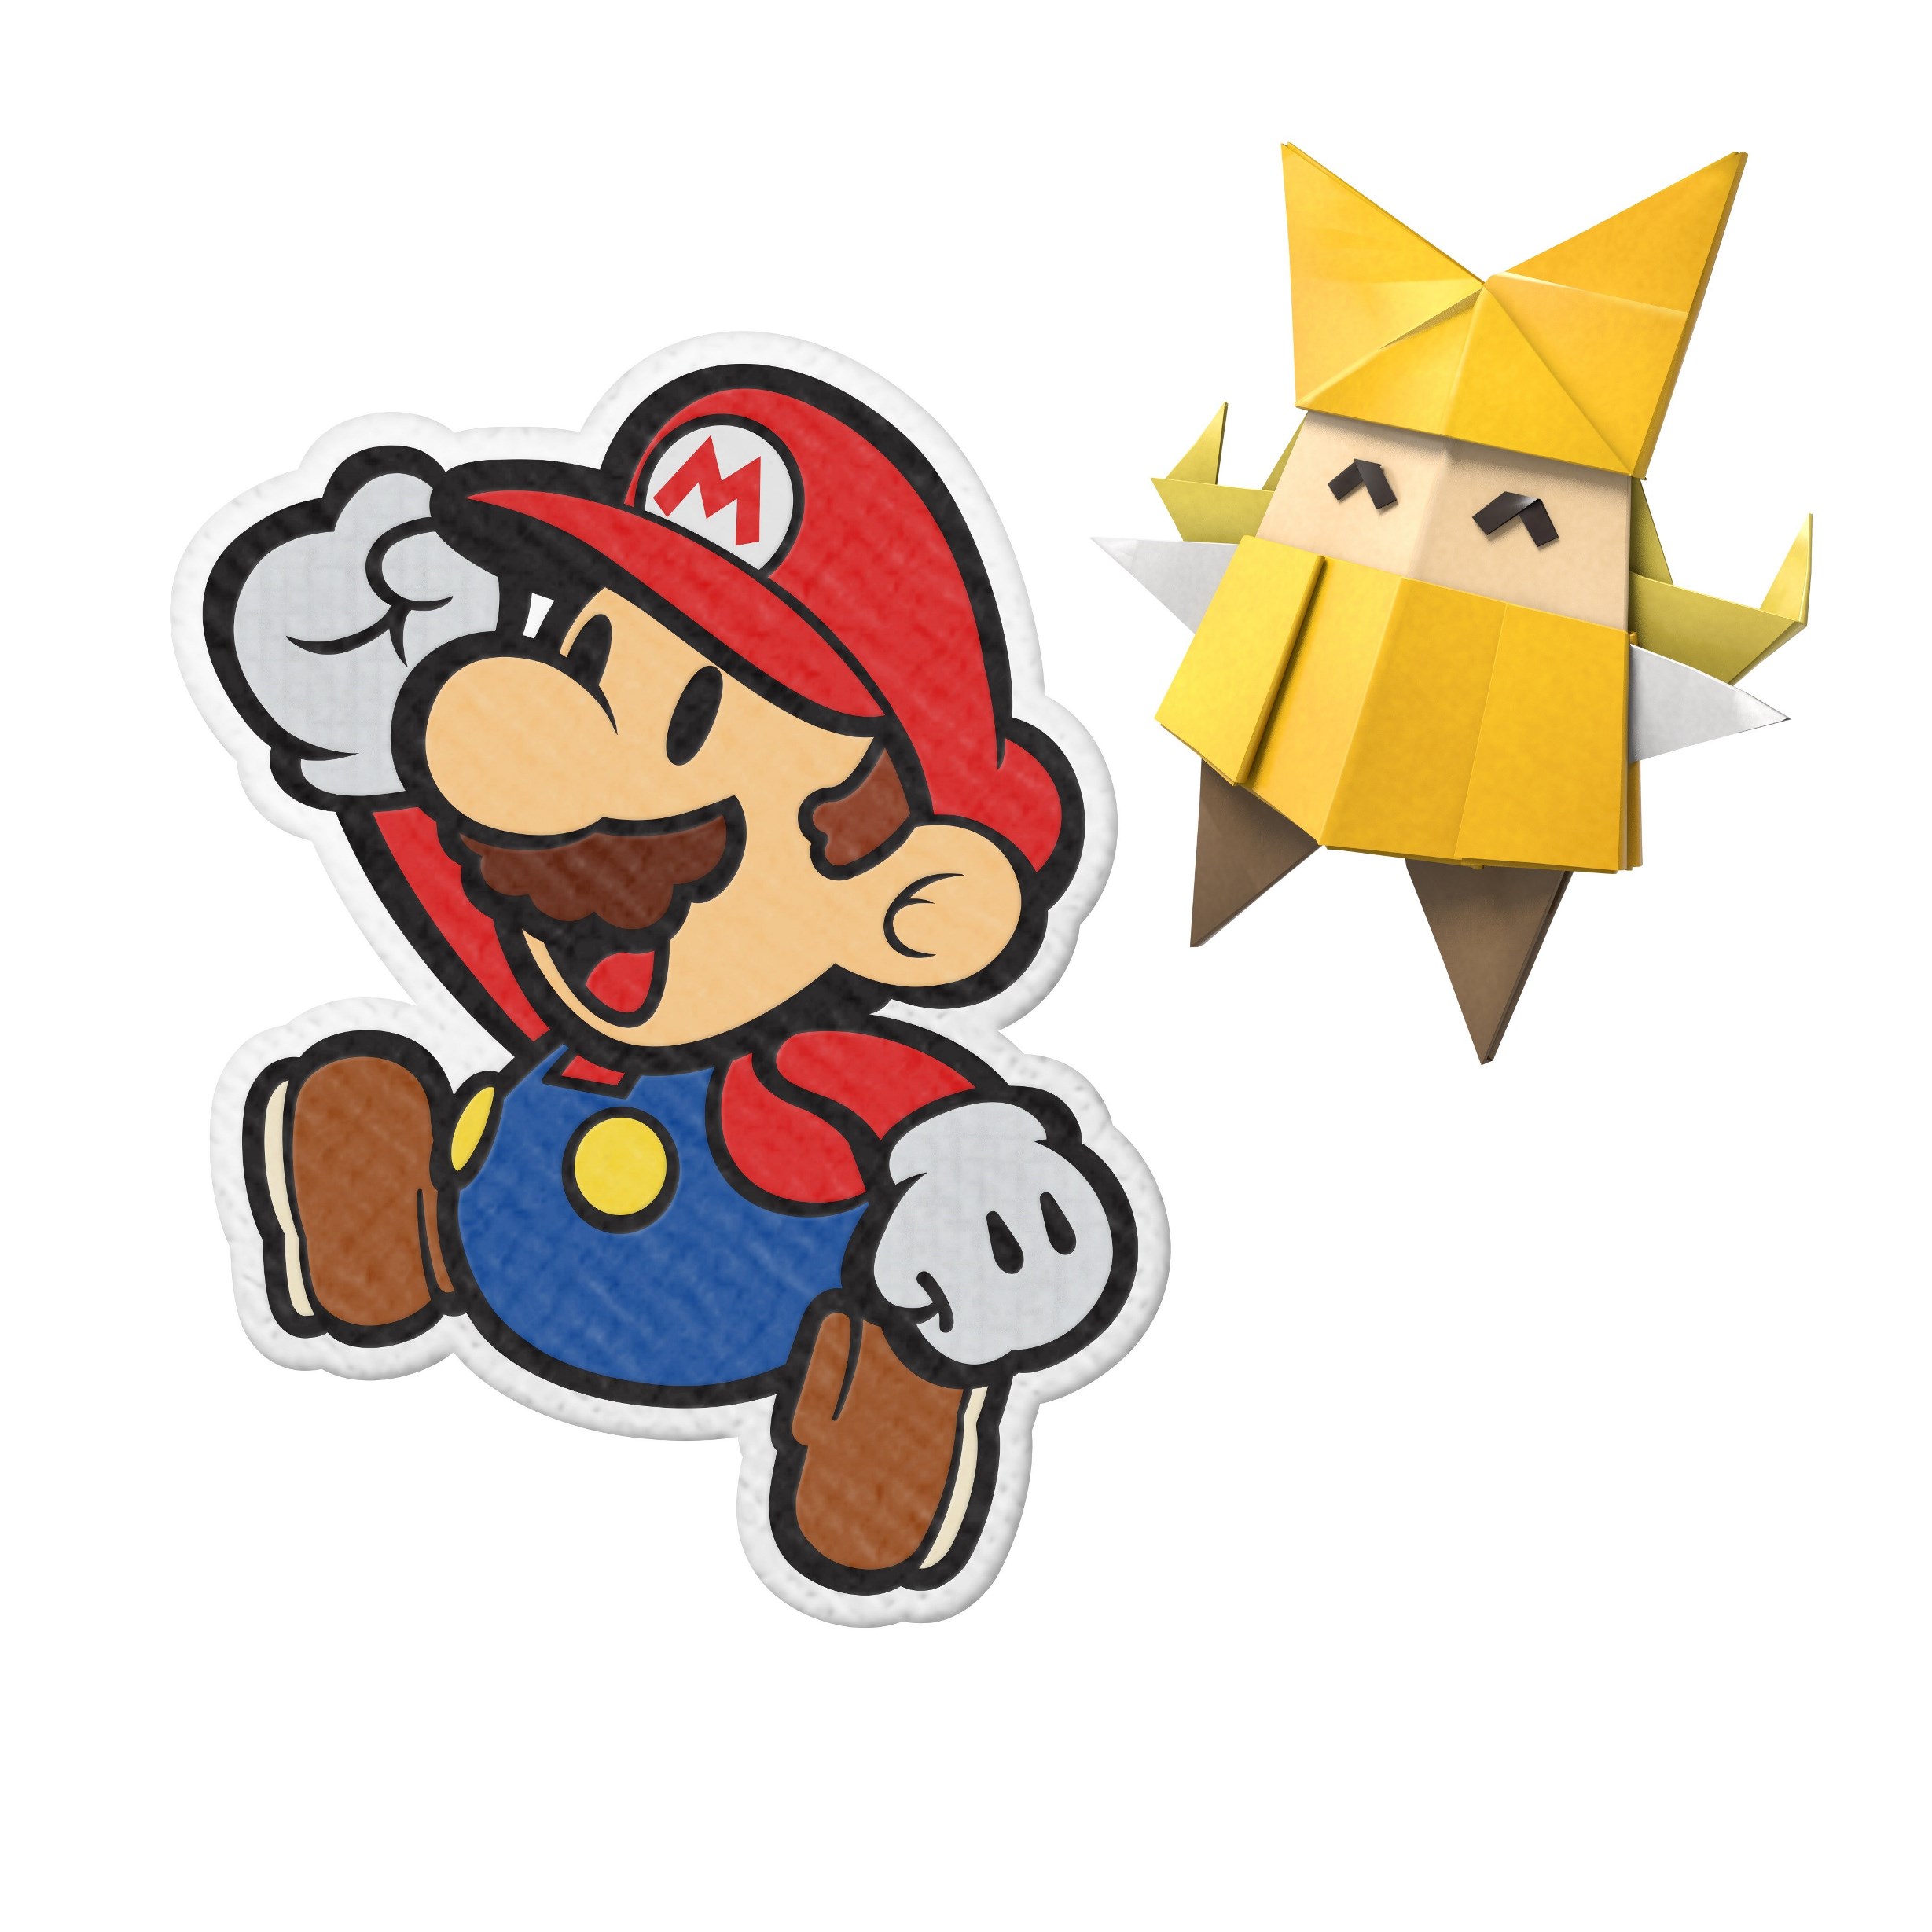 Paper mario origami king. Paper Mario Origami King Nintendo Switch. Paper Mario: the Origami.... Игра paper Mario: the Origami King.